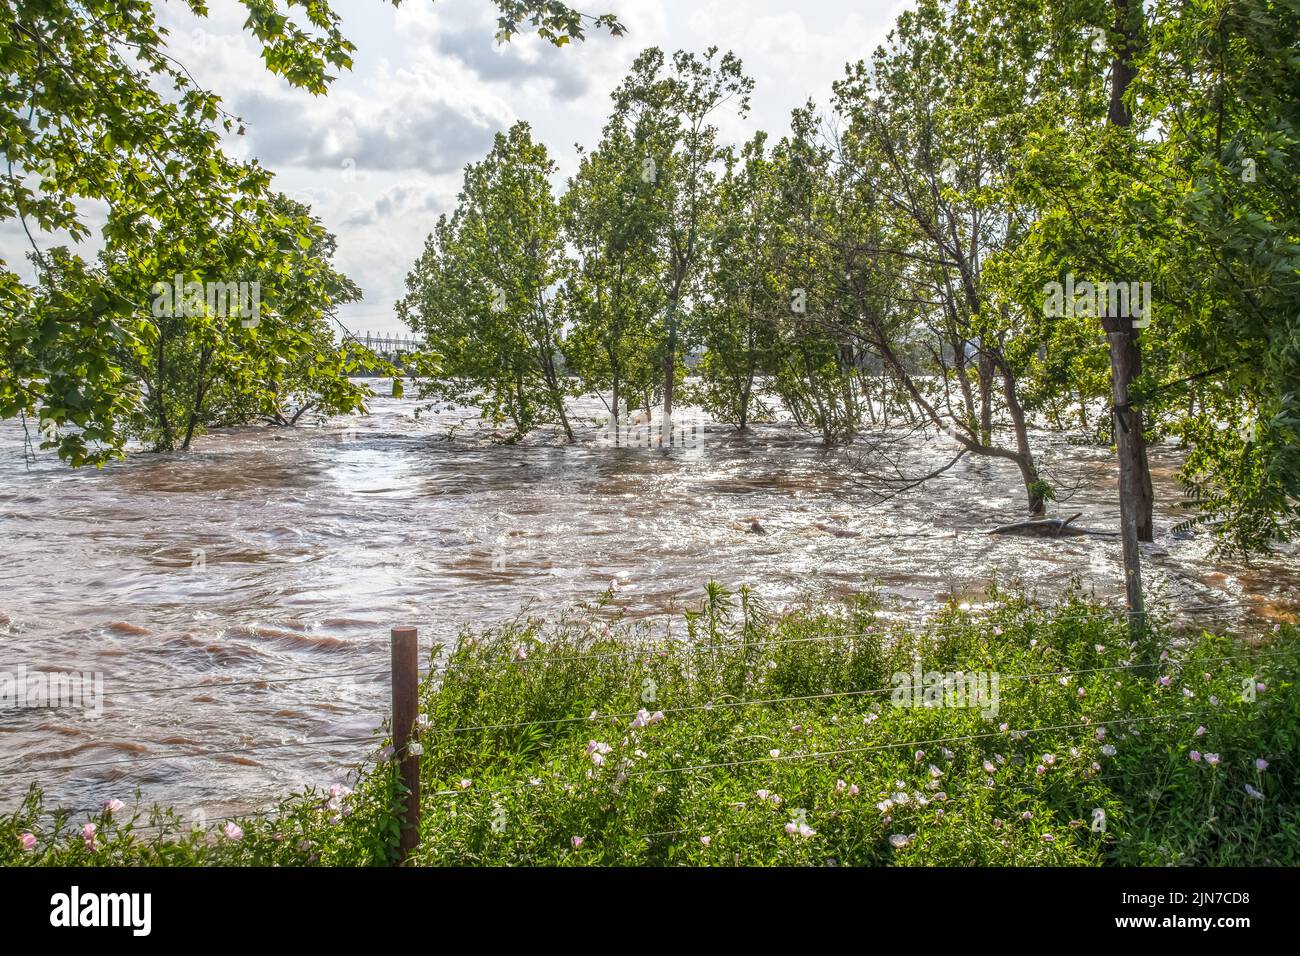 La rivière Arkansas s'est gonflée et inondée, alors qu'elle traverse Tulsa, OK, avec des arbres dans l'eau et partiellement submergés log - Electricity pylons acro Banque D'Images